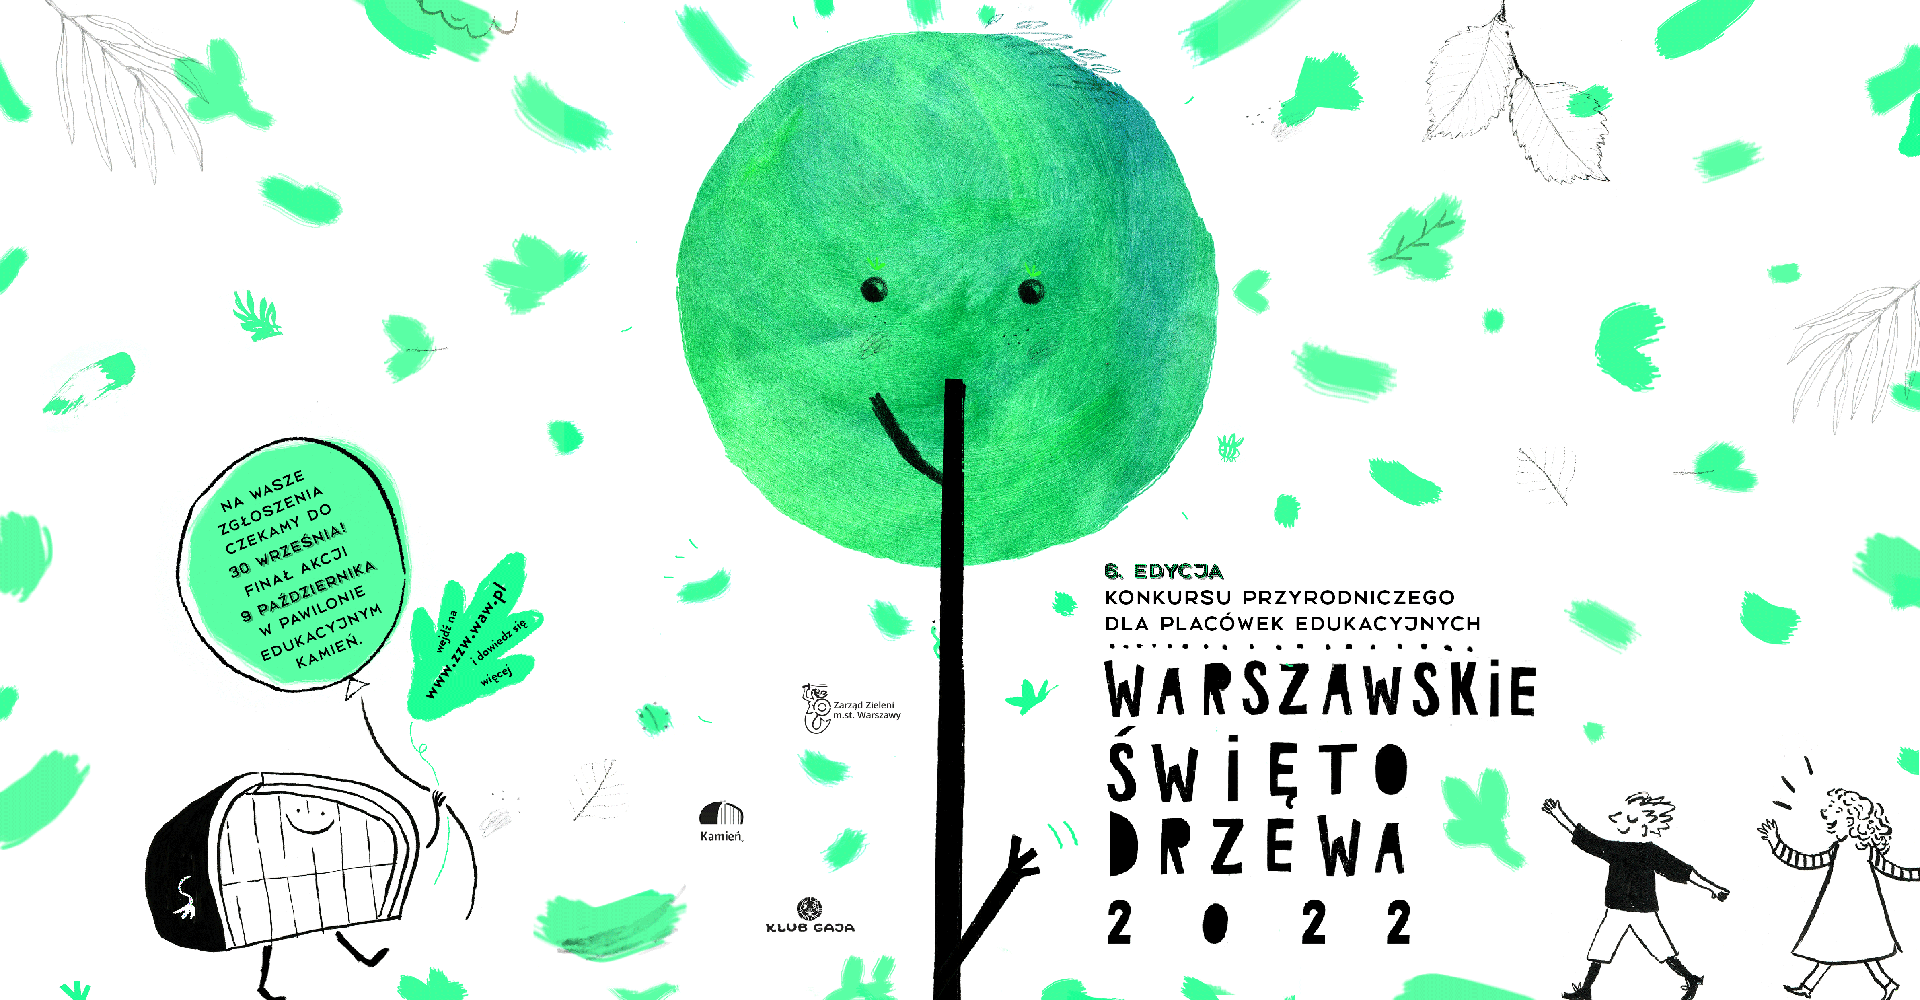 Plakat promujący Warszawskie Święto Drzewa